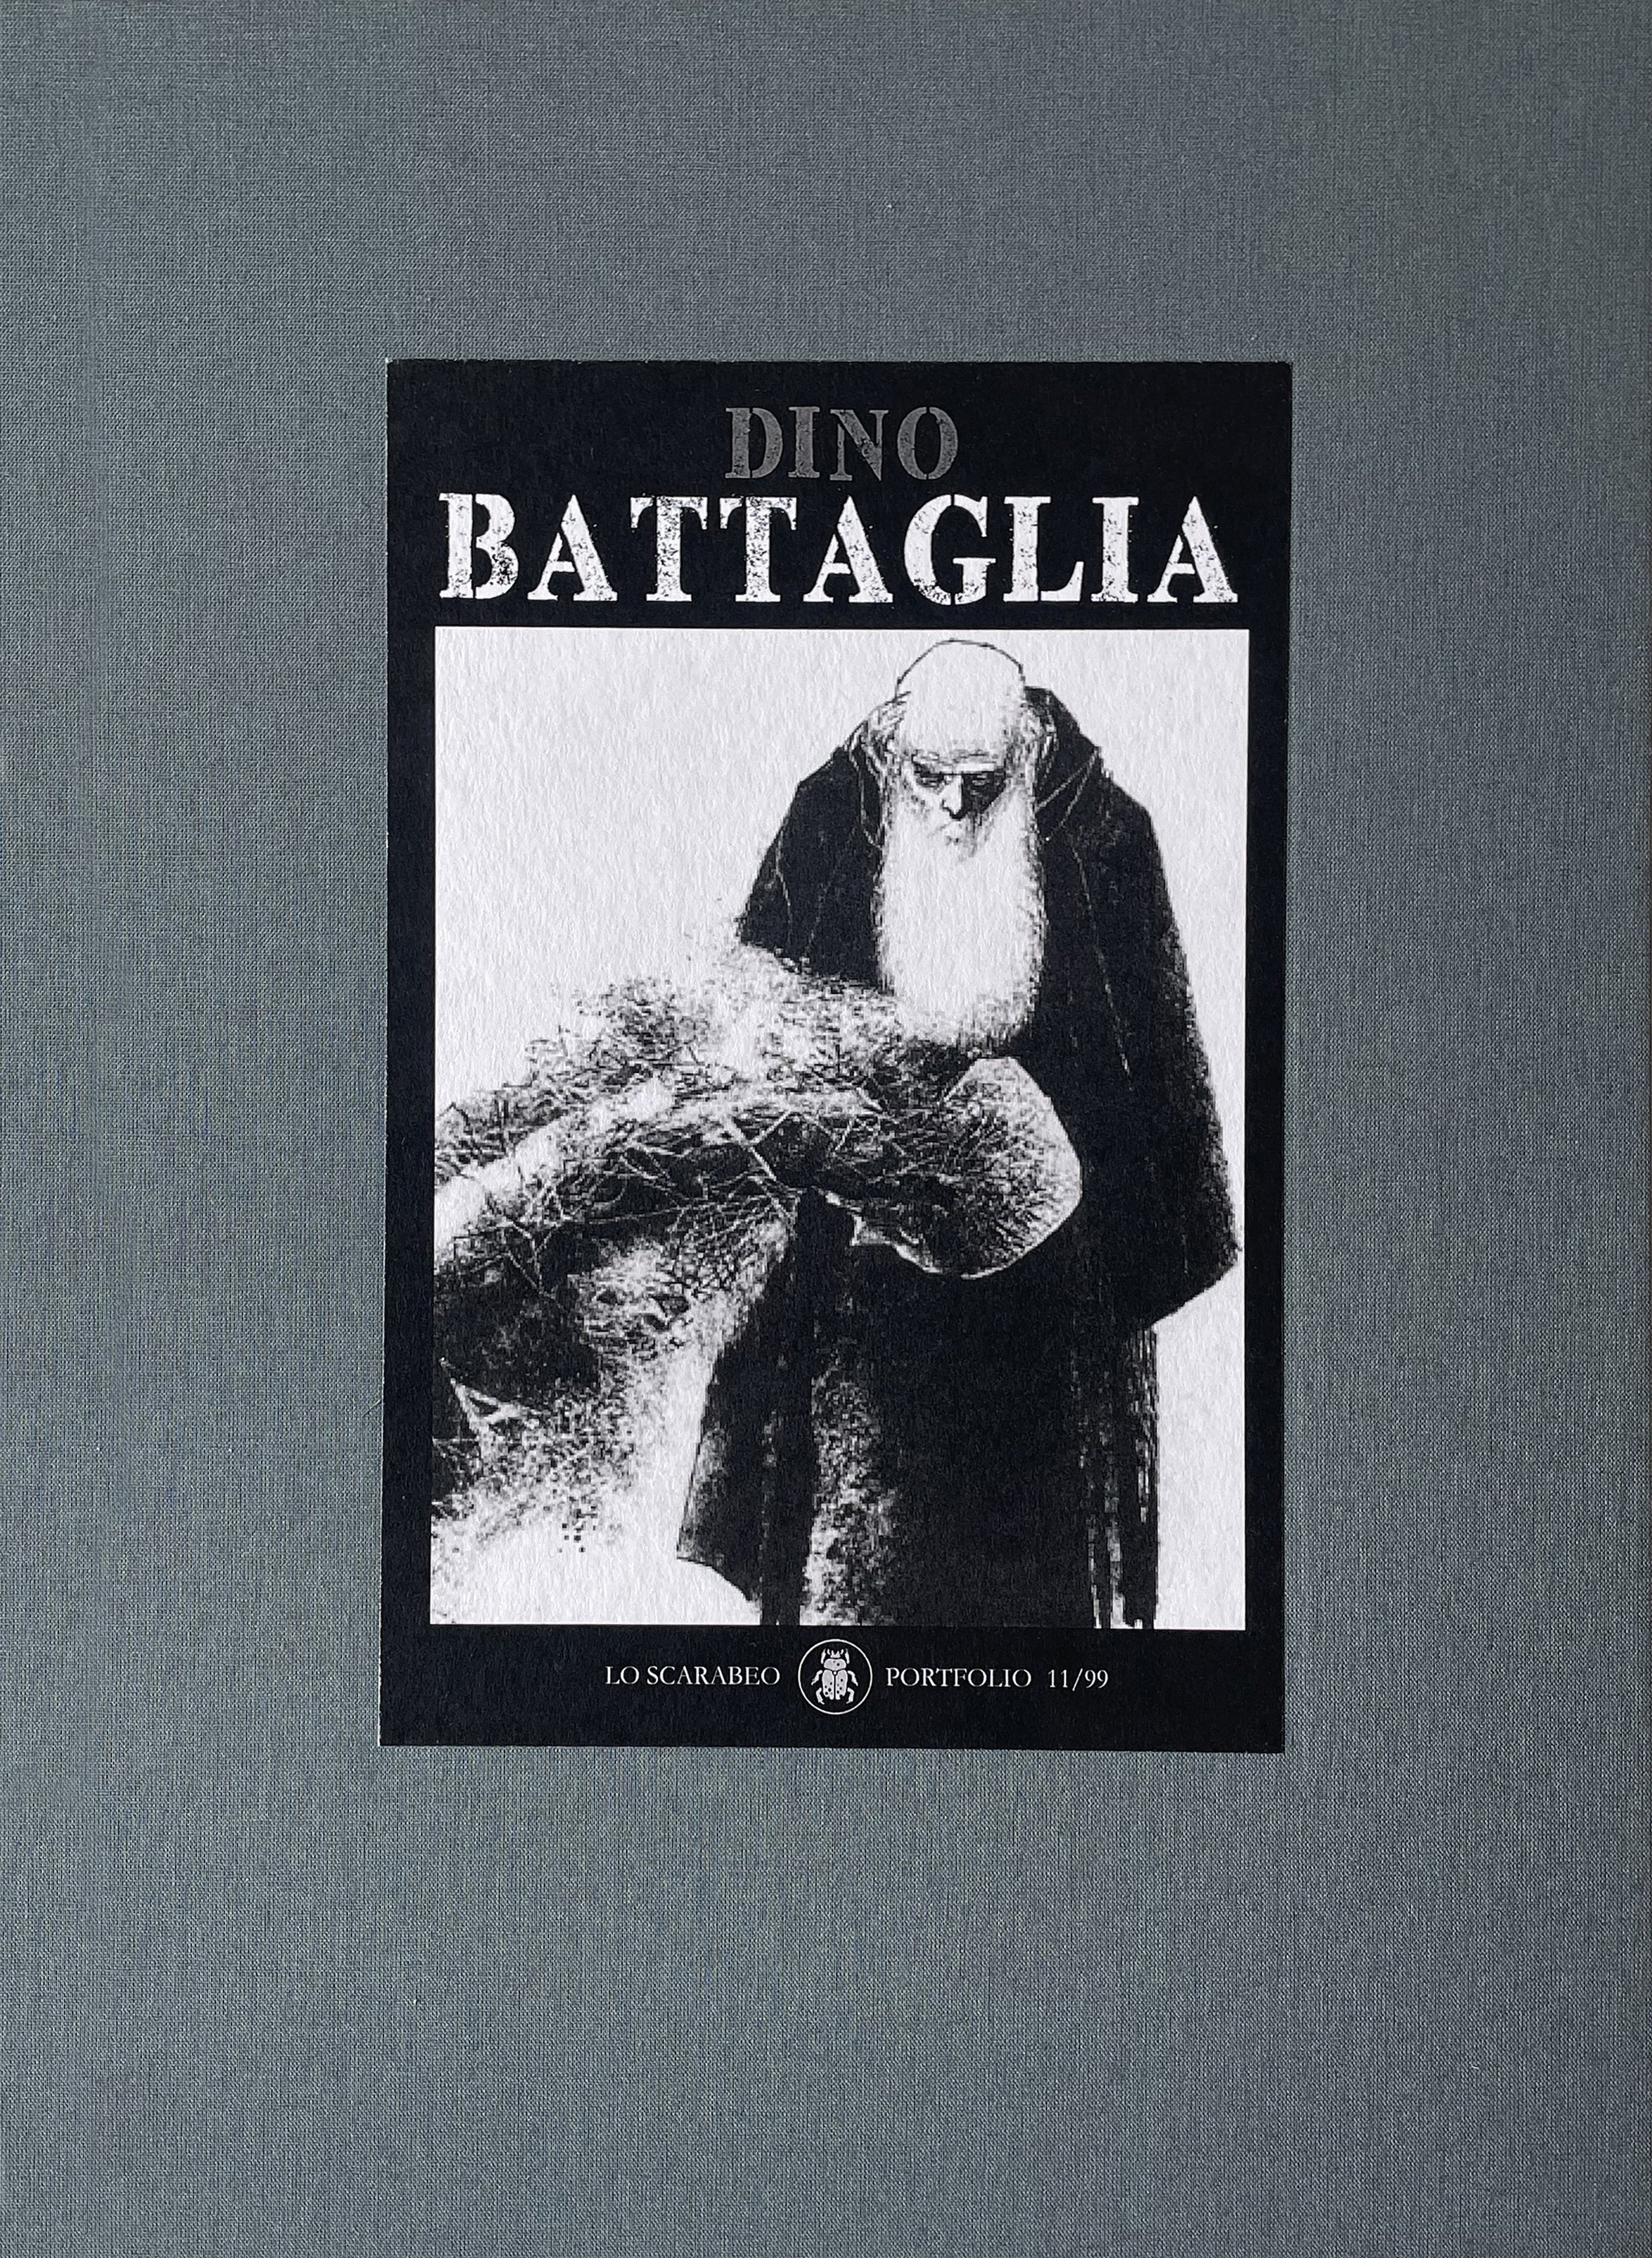 Dino Battaglia - Portfolio Deluxe Limitato